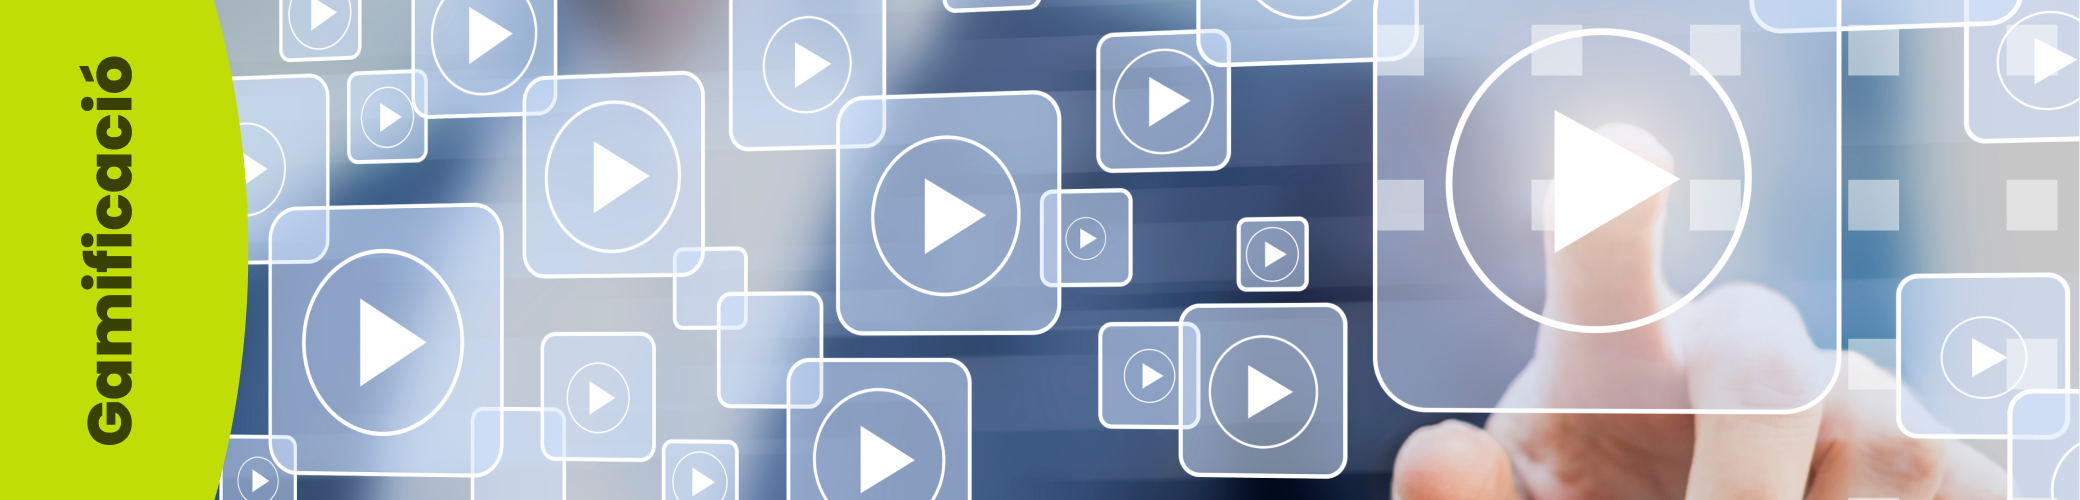 Què és un vídeo interactiu? Exemples i consells